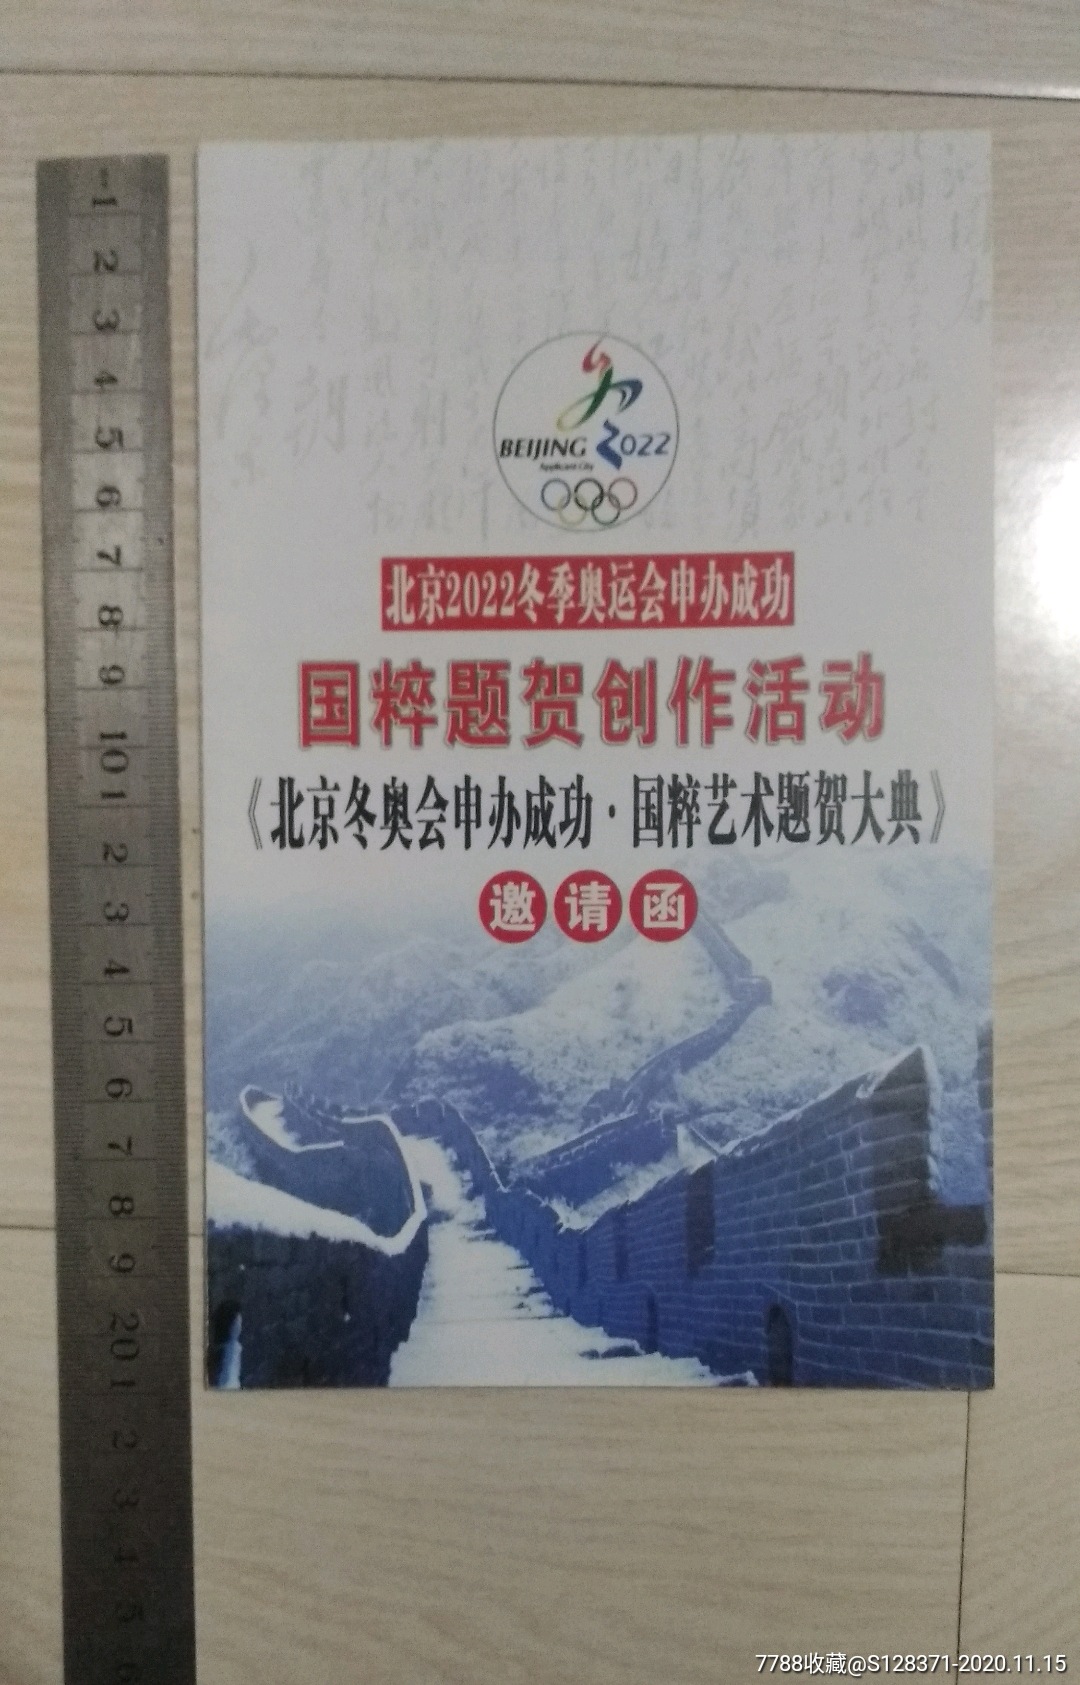 北京2022冬季奥运会申报成功国粹题贺创作活动